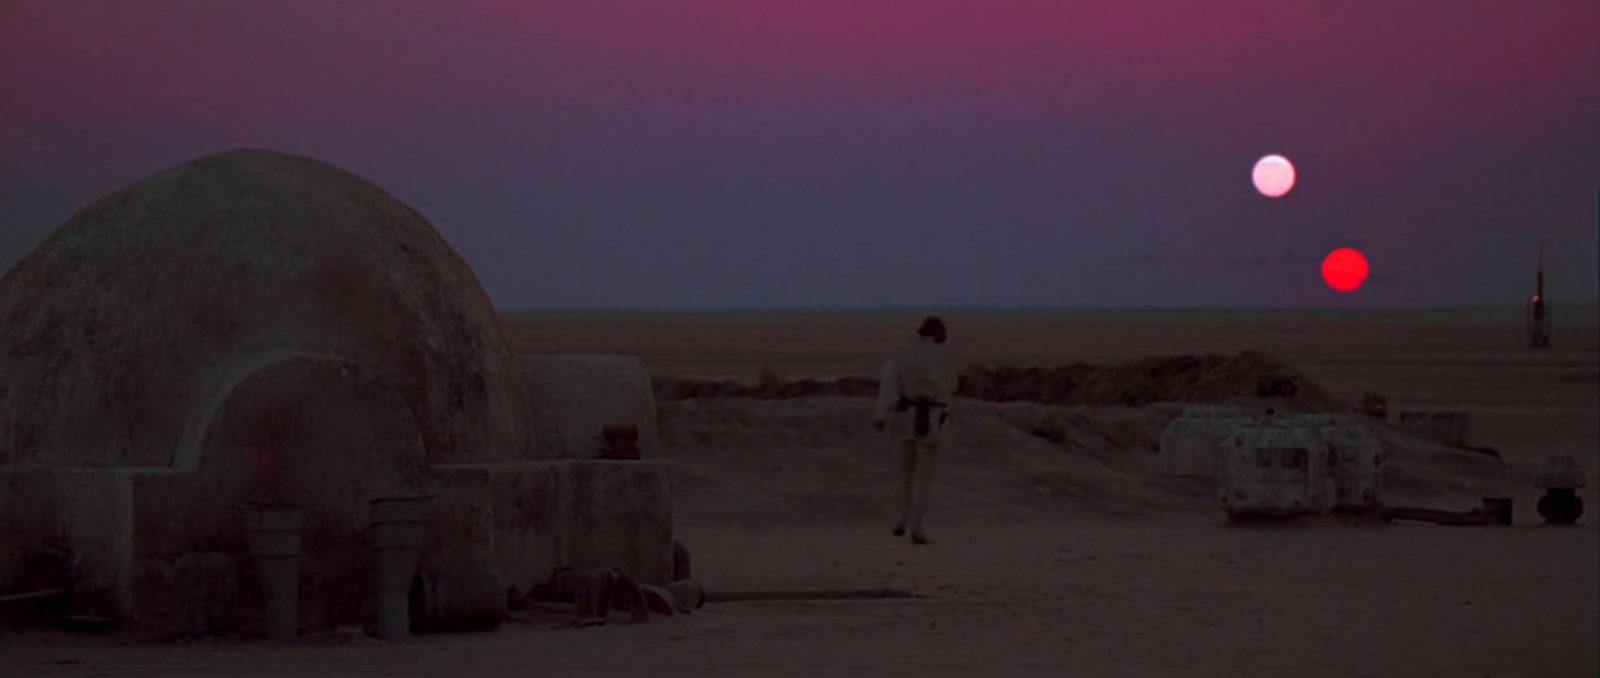 Tatooine, um dos planetas em Star Wars 